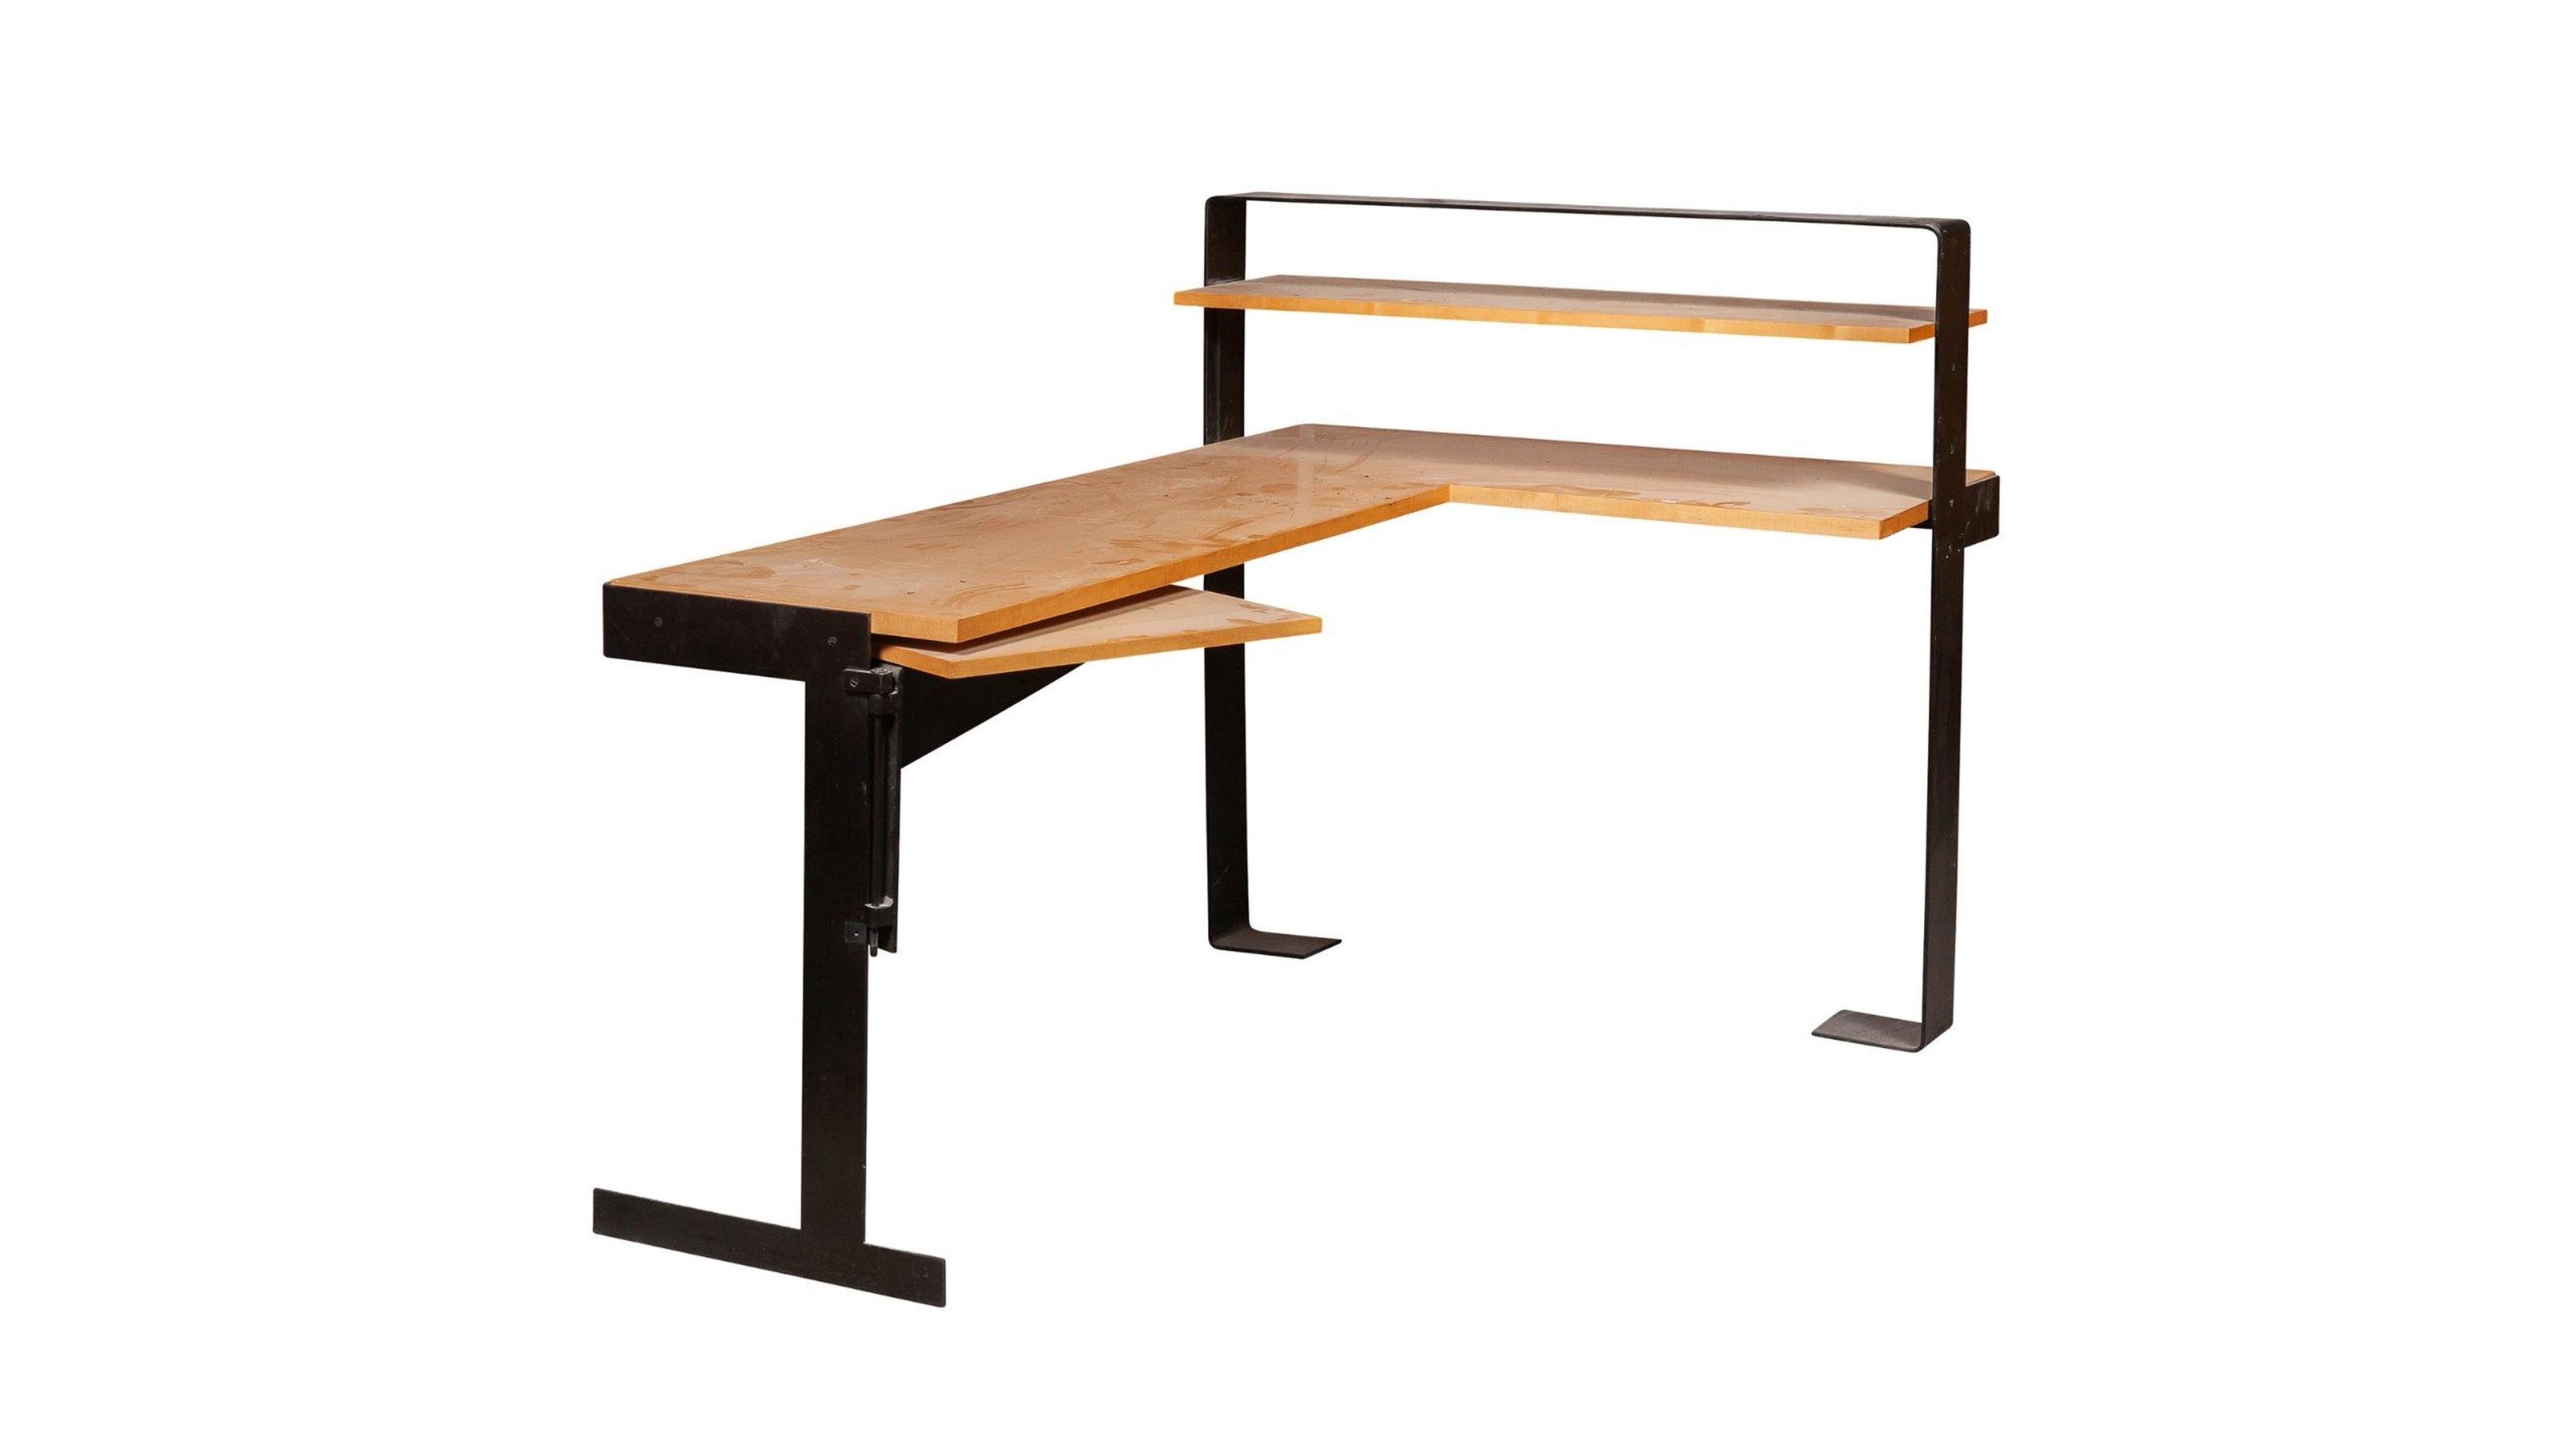 D'après Pierre Chareau
Corner desk in wood and wrought iron with black patina.
Measures: 41.4 x 62.9 x 41.5 in.
Bureau d'angle.
En bois blond, à gradin latéral droit formé de trois tablettes, dont l'une mobile à gauche, sur une structure en fer